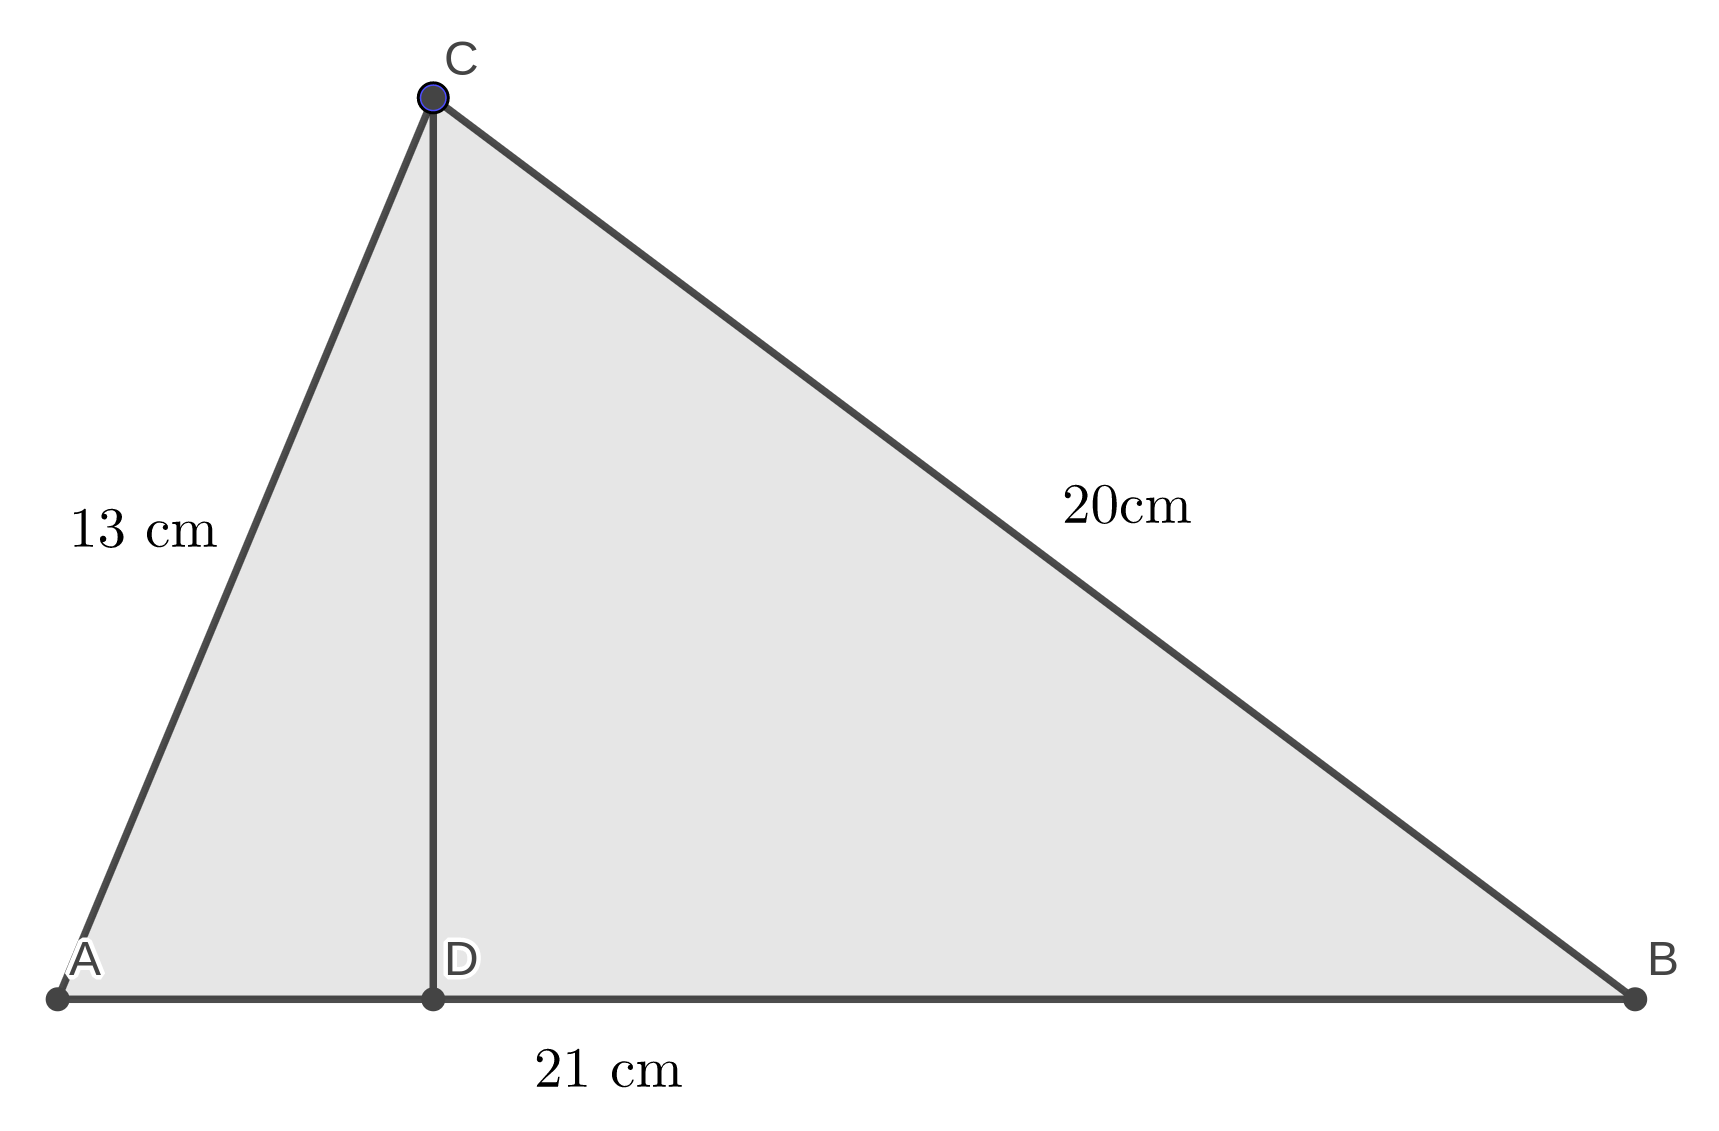 Menentukan tinggi segitiga sembarang